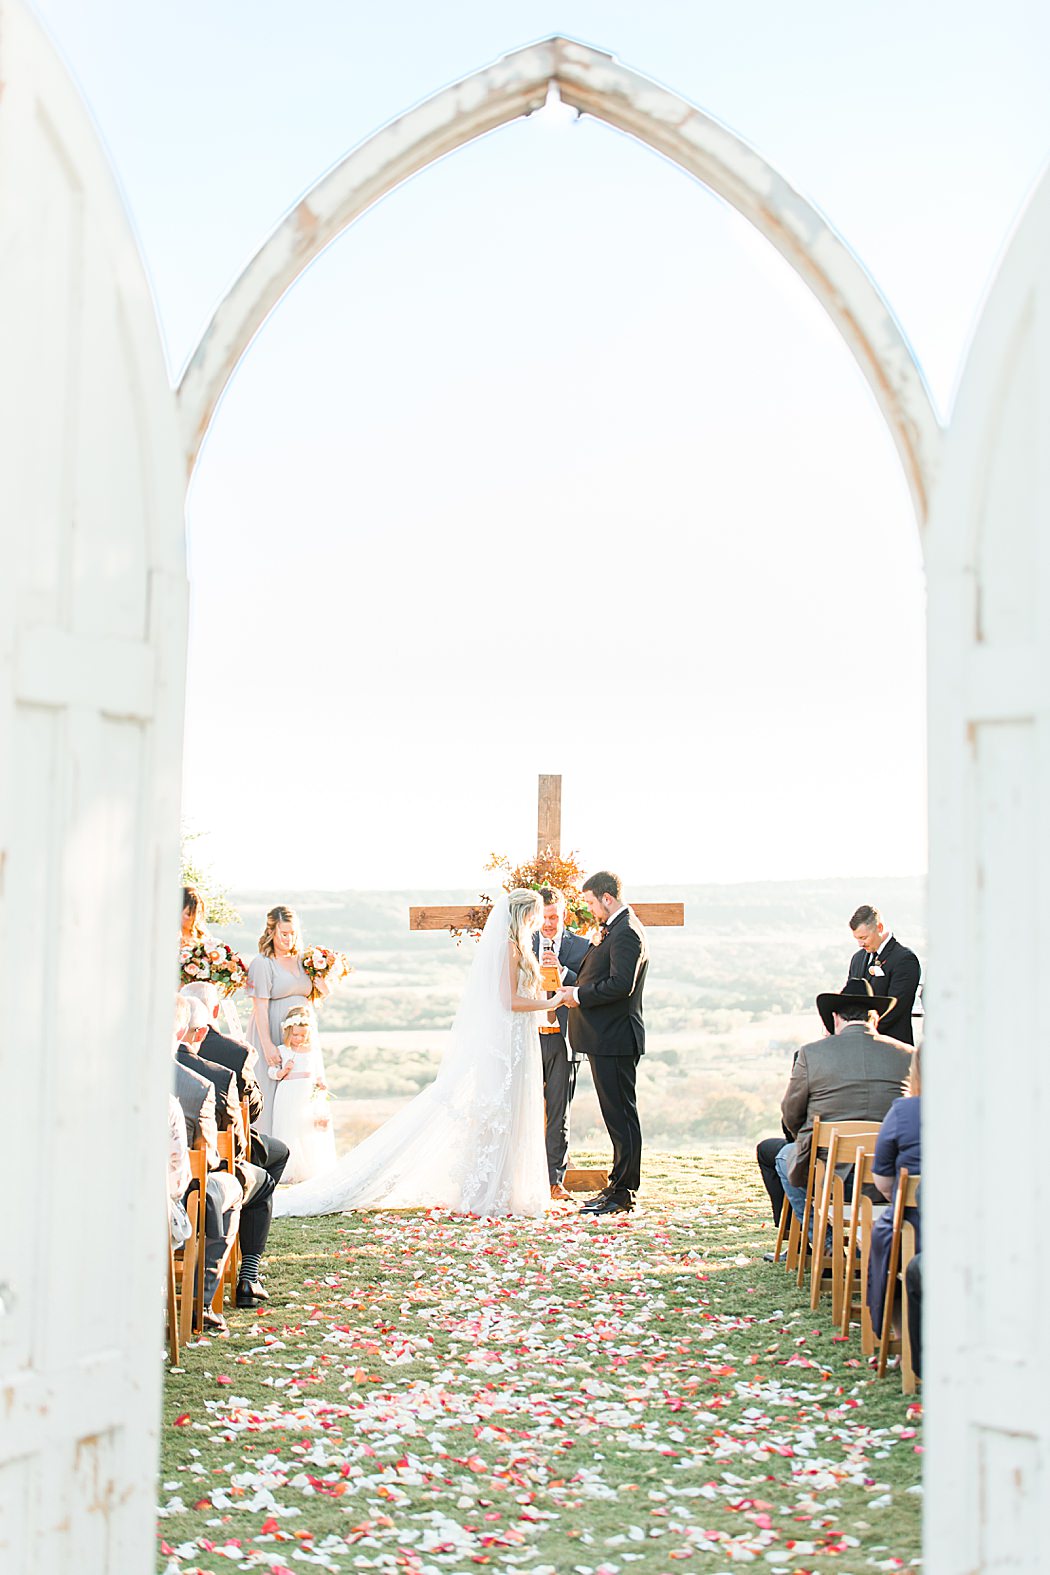 A Grey and Peach Fall Wedding at Contigo Ranch in Fredericksburg Texas by Allison Jeffers Photography 00038